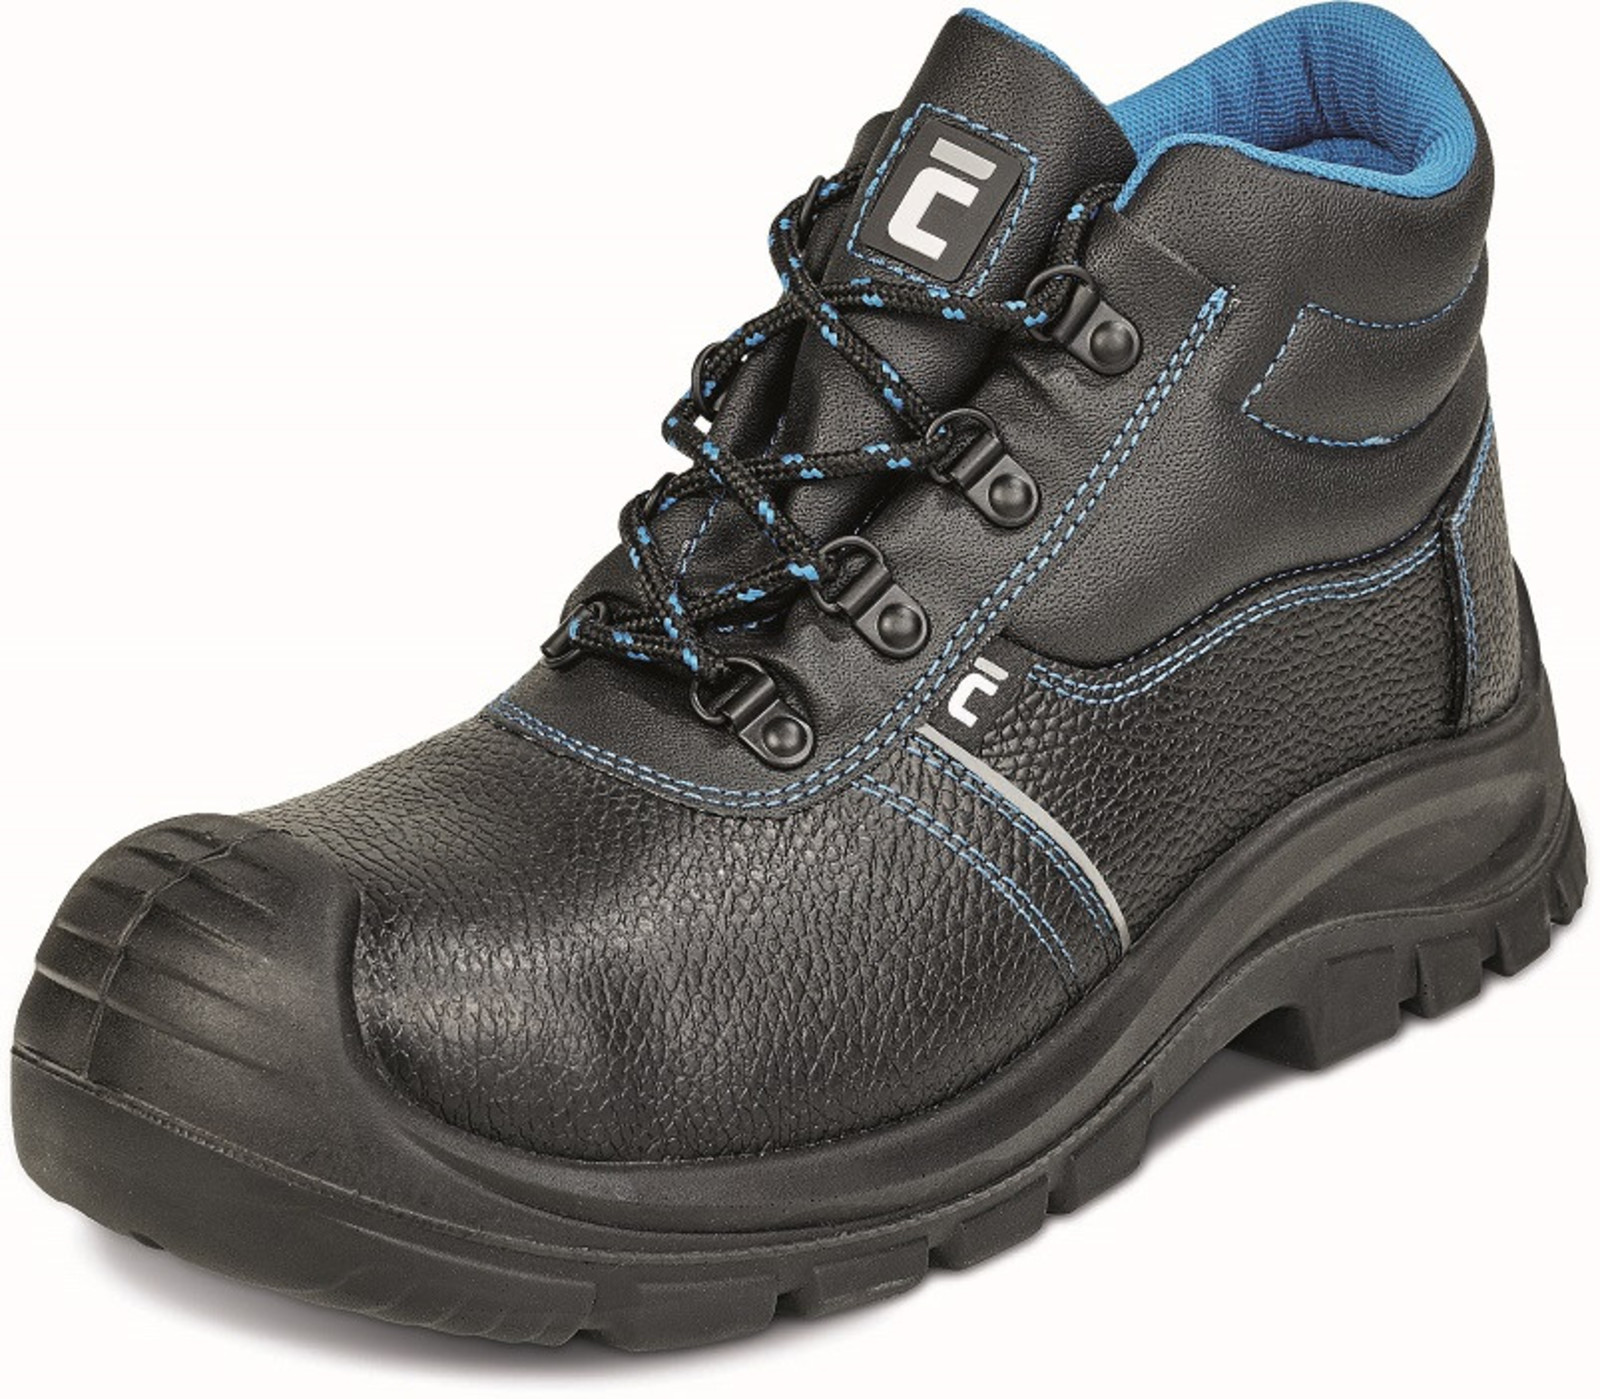 Bezpečnostná obuv Raven XT S1 - veľkosť: 37, farba: čierna